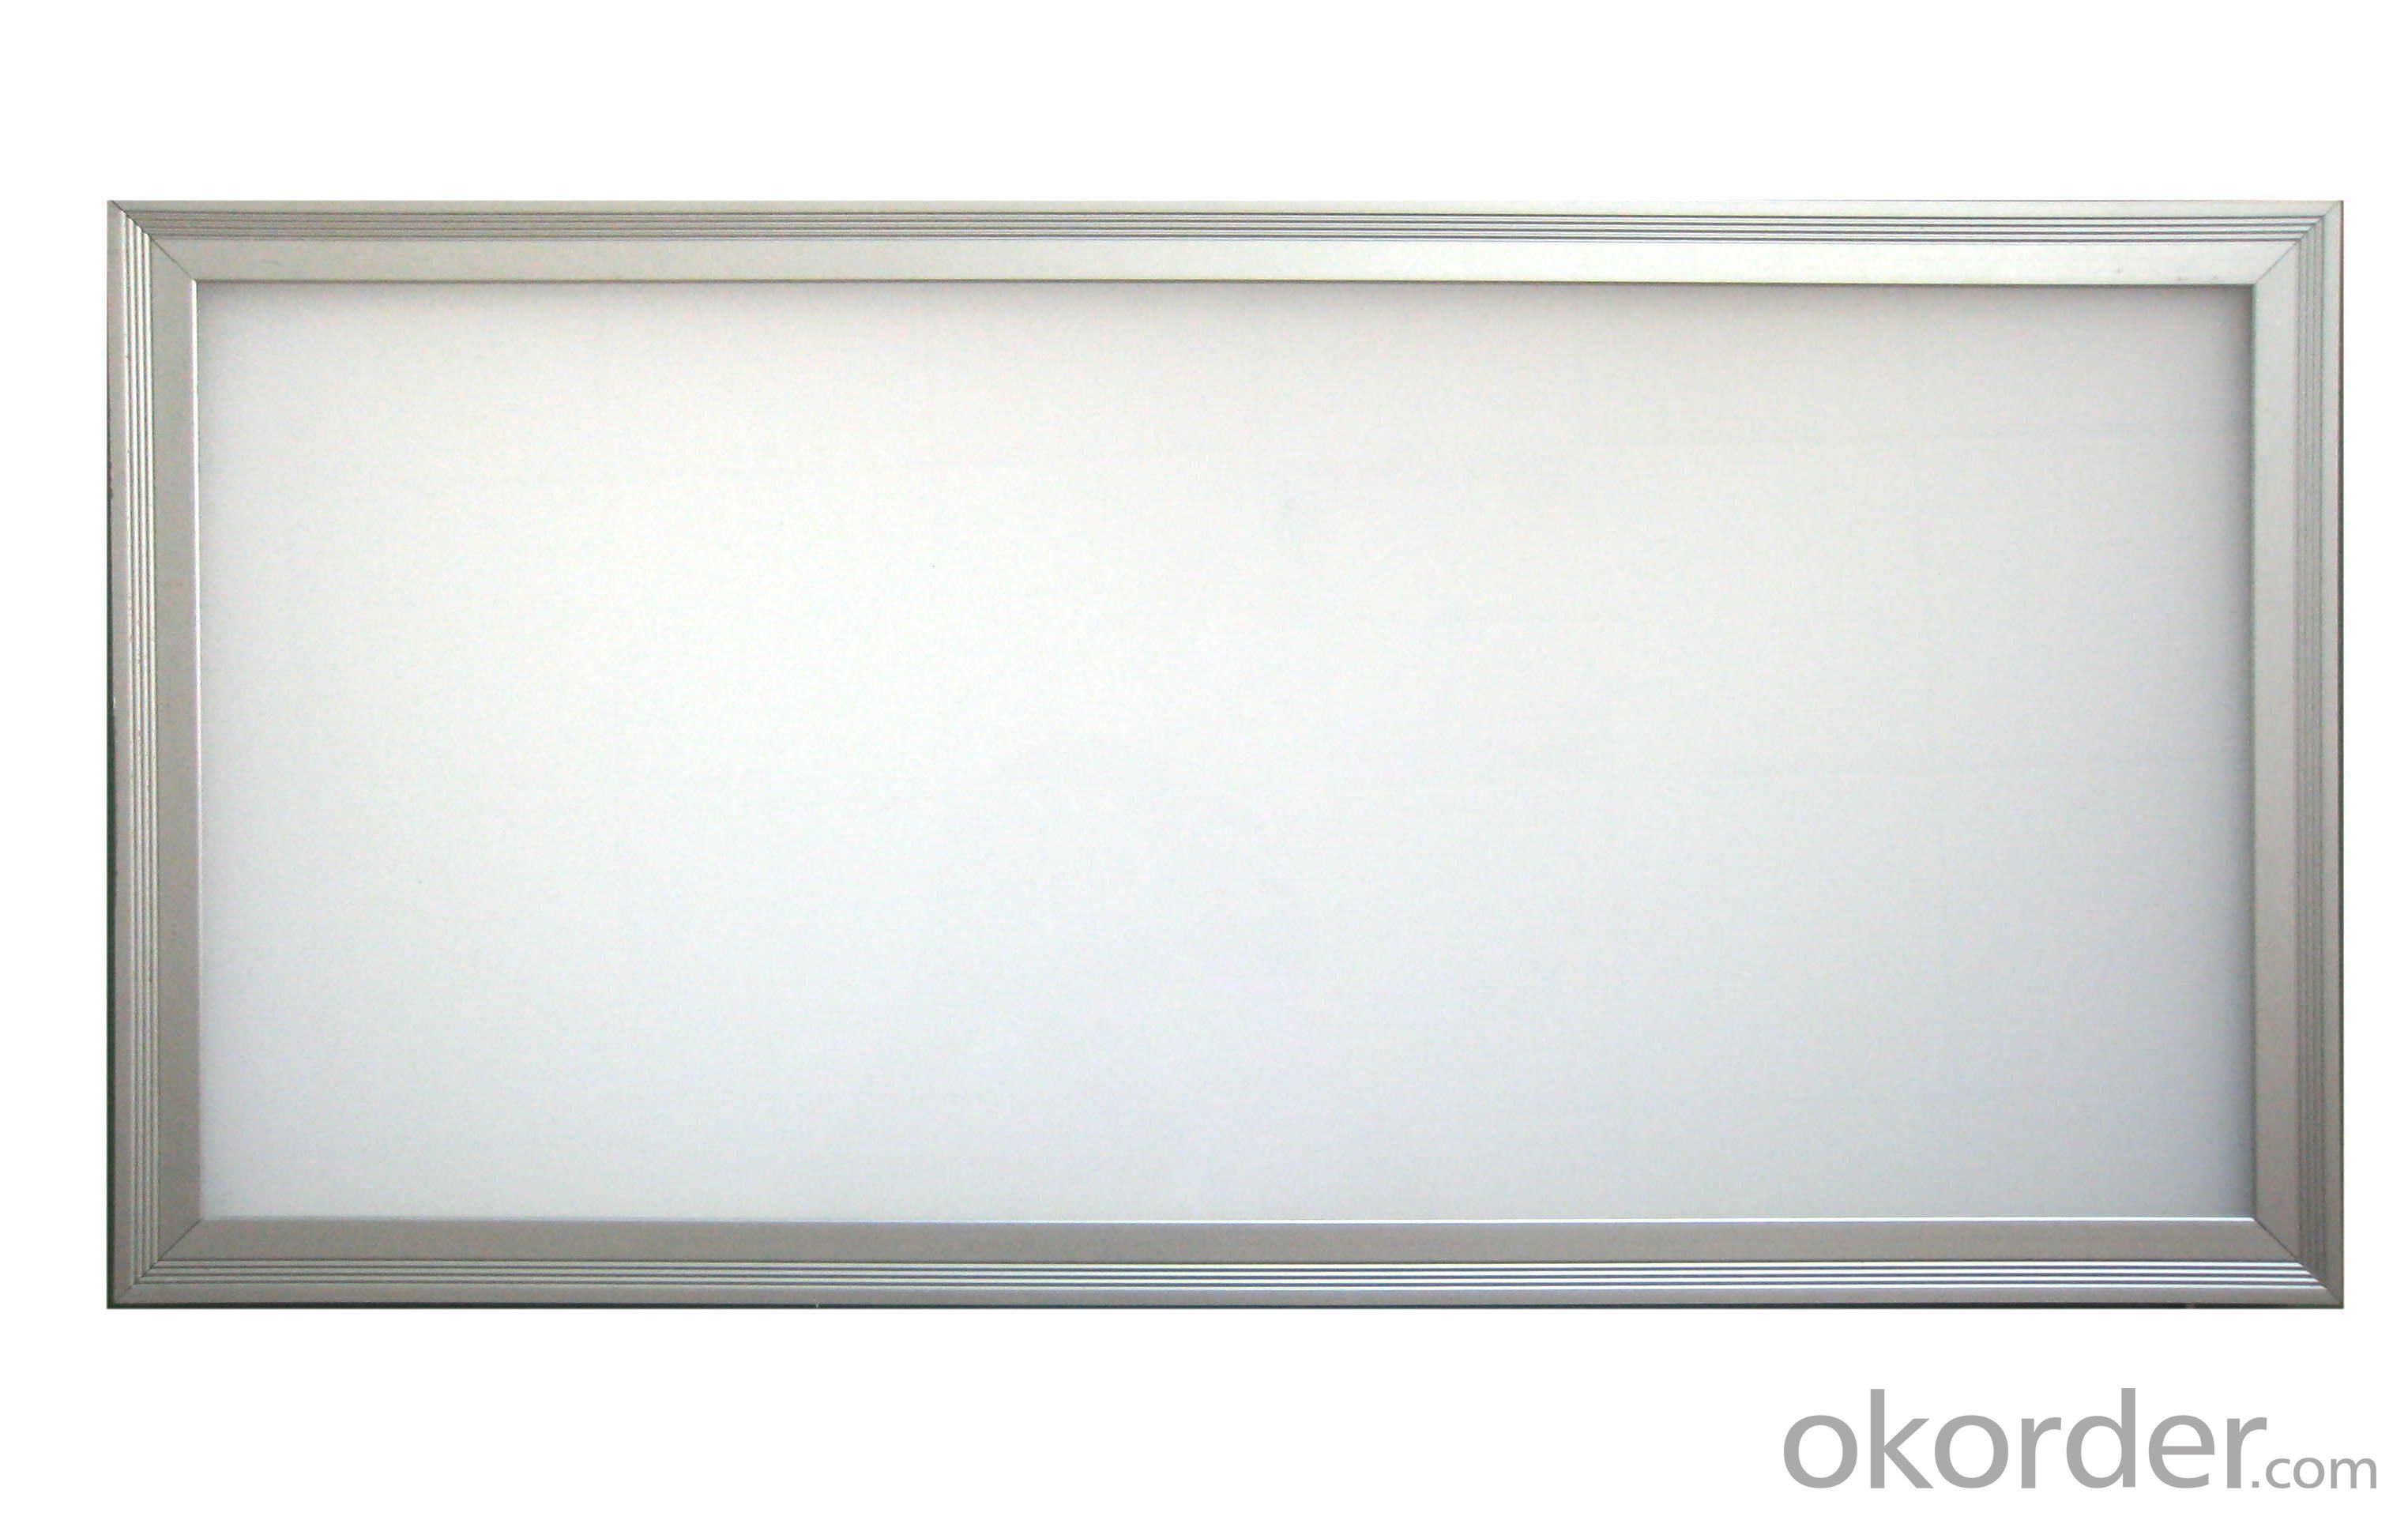 LED Panel Light 300x600MM Grille Light, for Ceiling Lighting